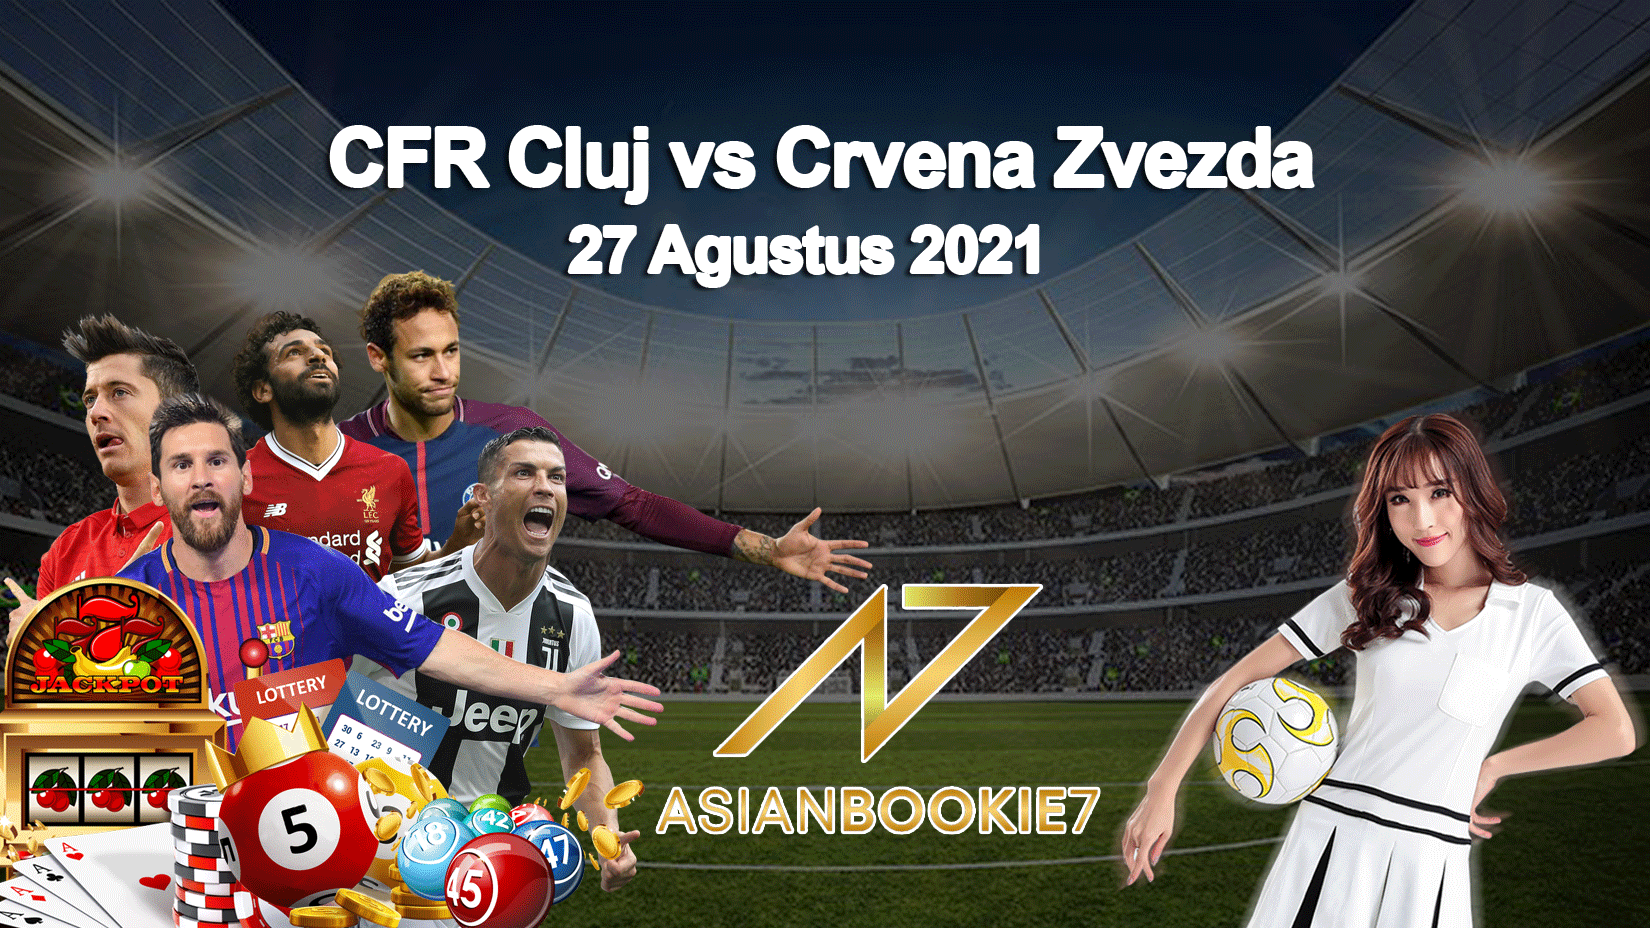 Prediksi CFR Cluj vs Crvena Zvezda 27 Agustus 2021